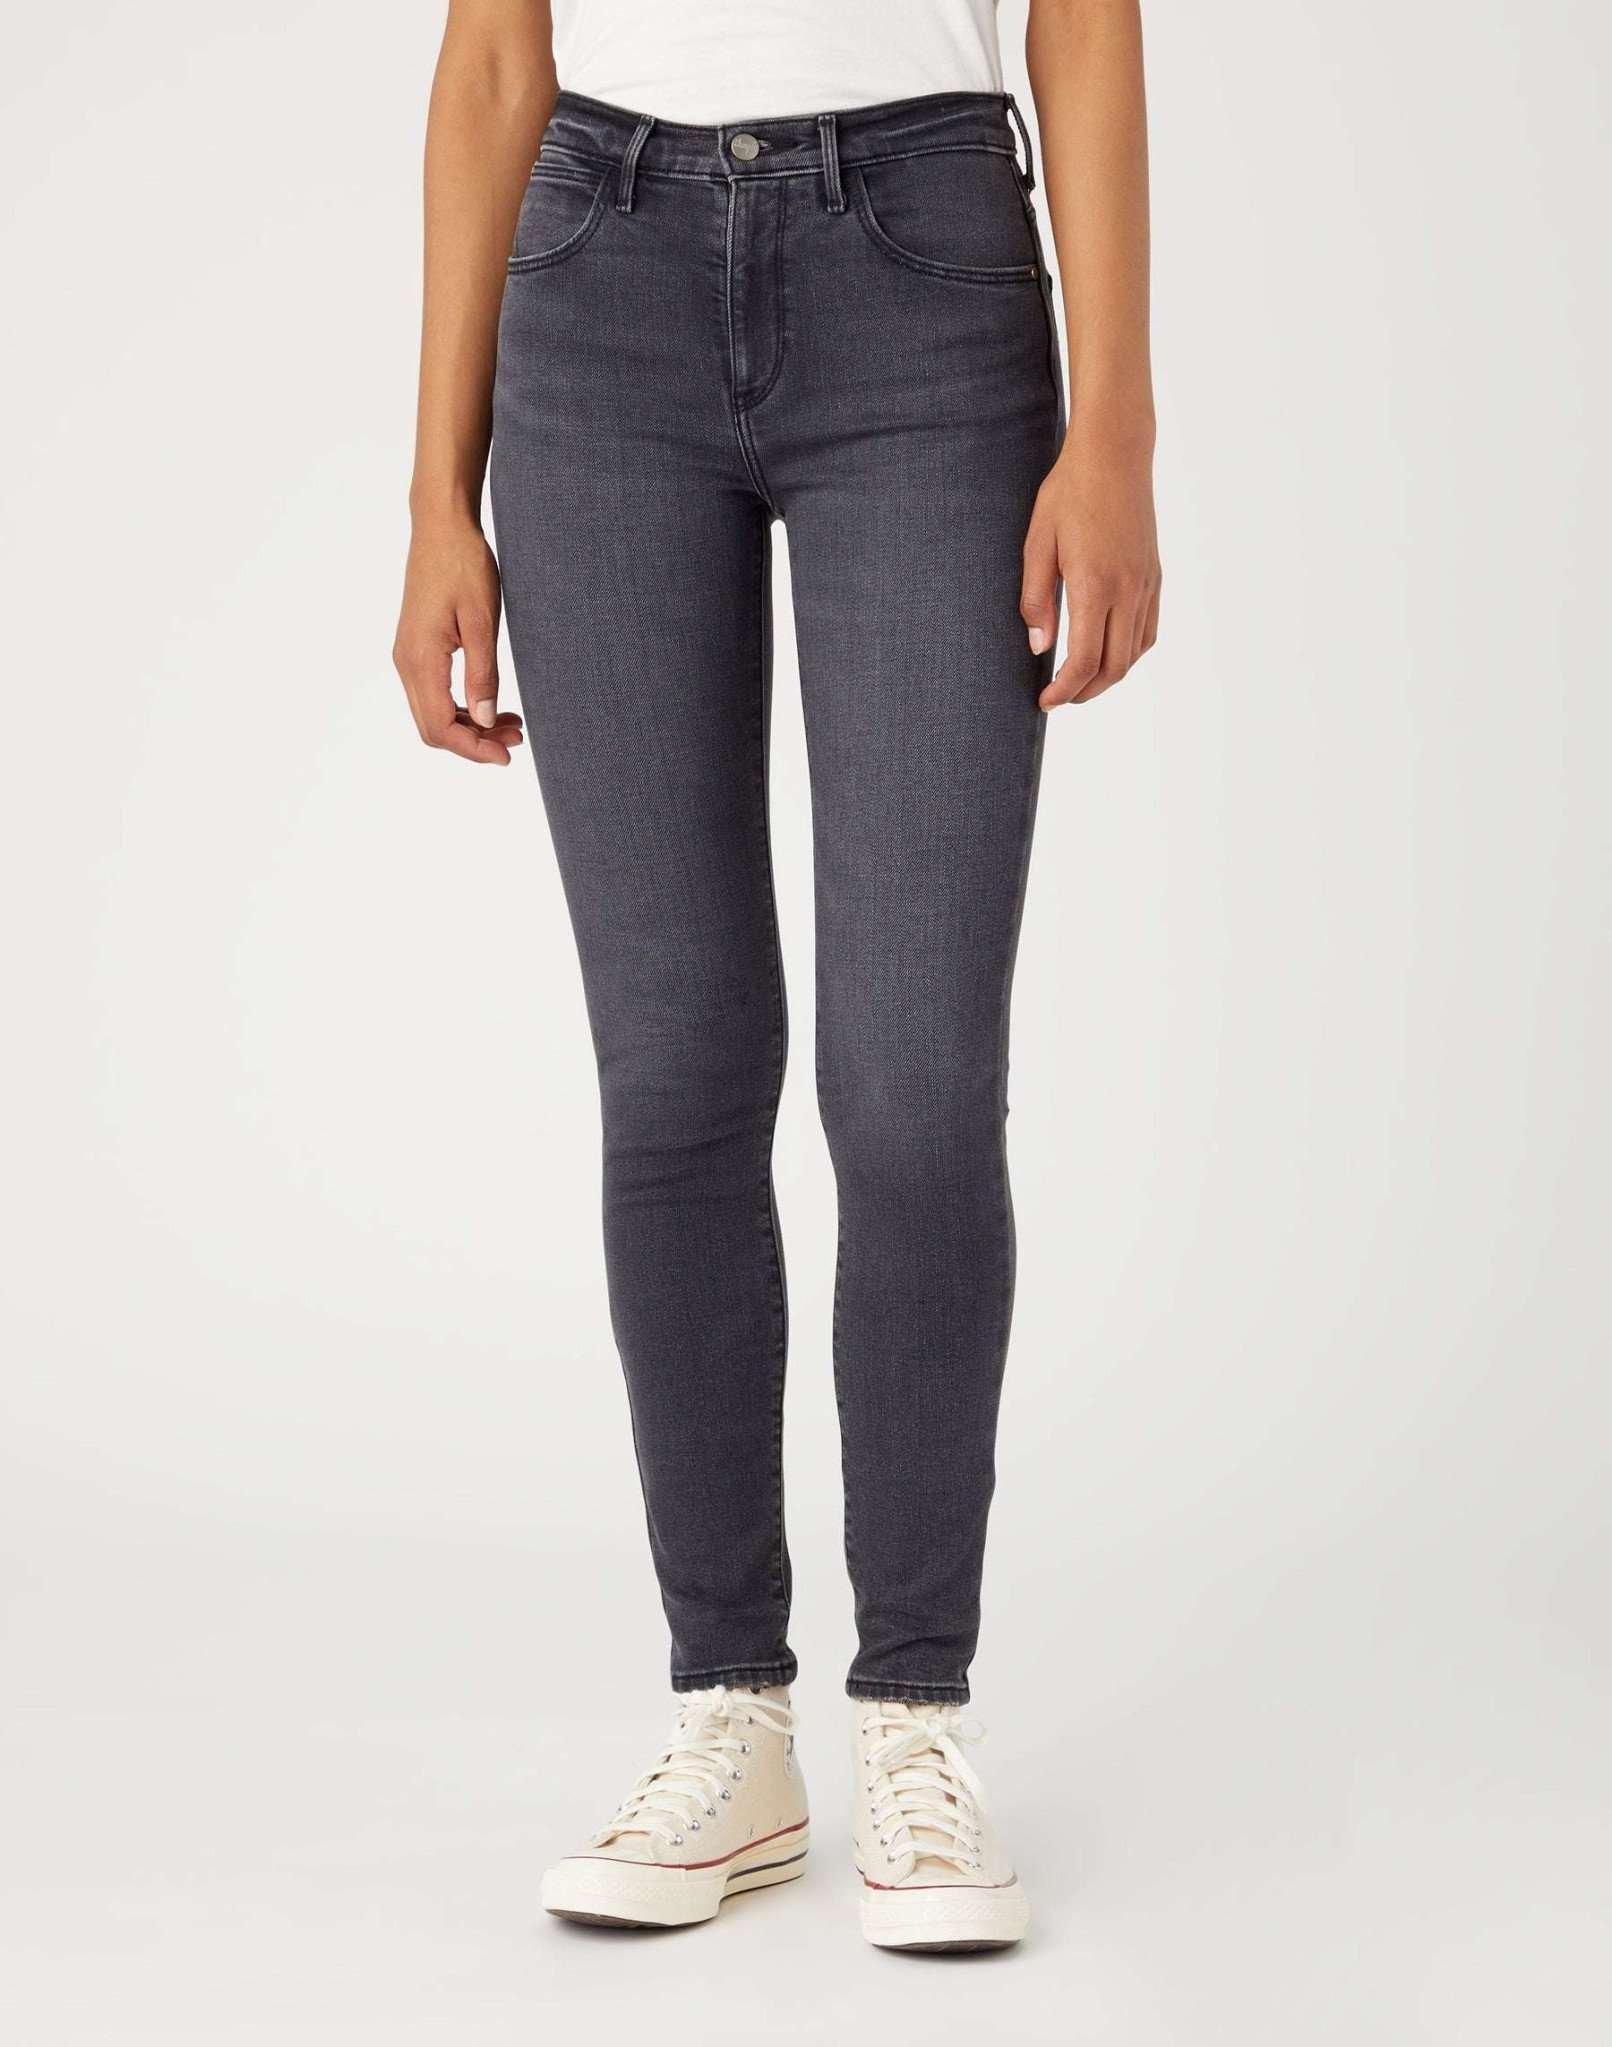 Jeans Skinny Fit High Skinny Damen Schwarz L34/W27 von Wrangler